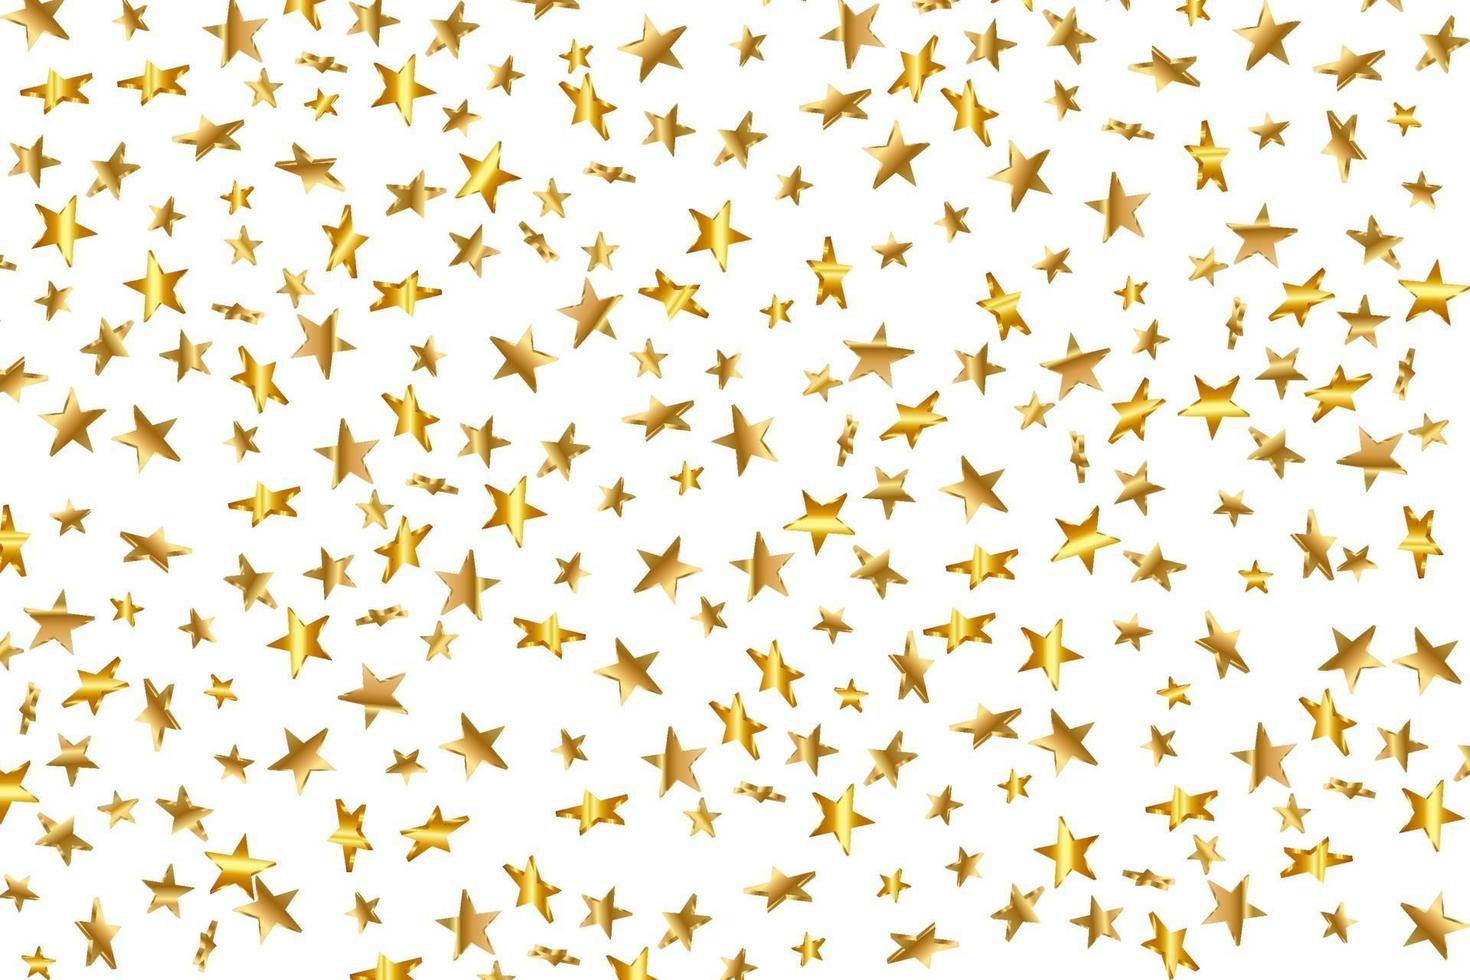 Estrella 3d cayendo. amarillo dorado estrellado sobre fondo transparente. vector de fondo estrella de confeti. tarjeta iluminada por las estrellas doradas. confeti caída decoración caótica.